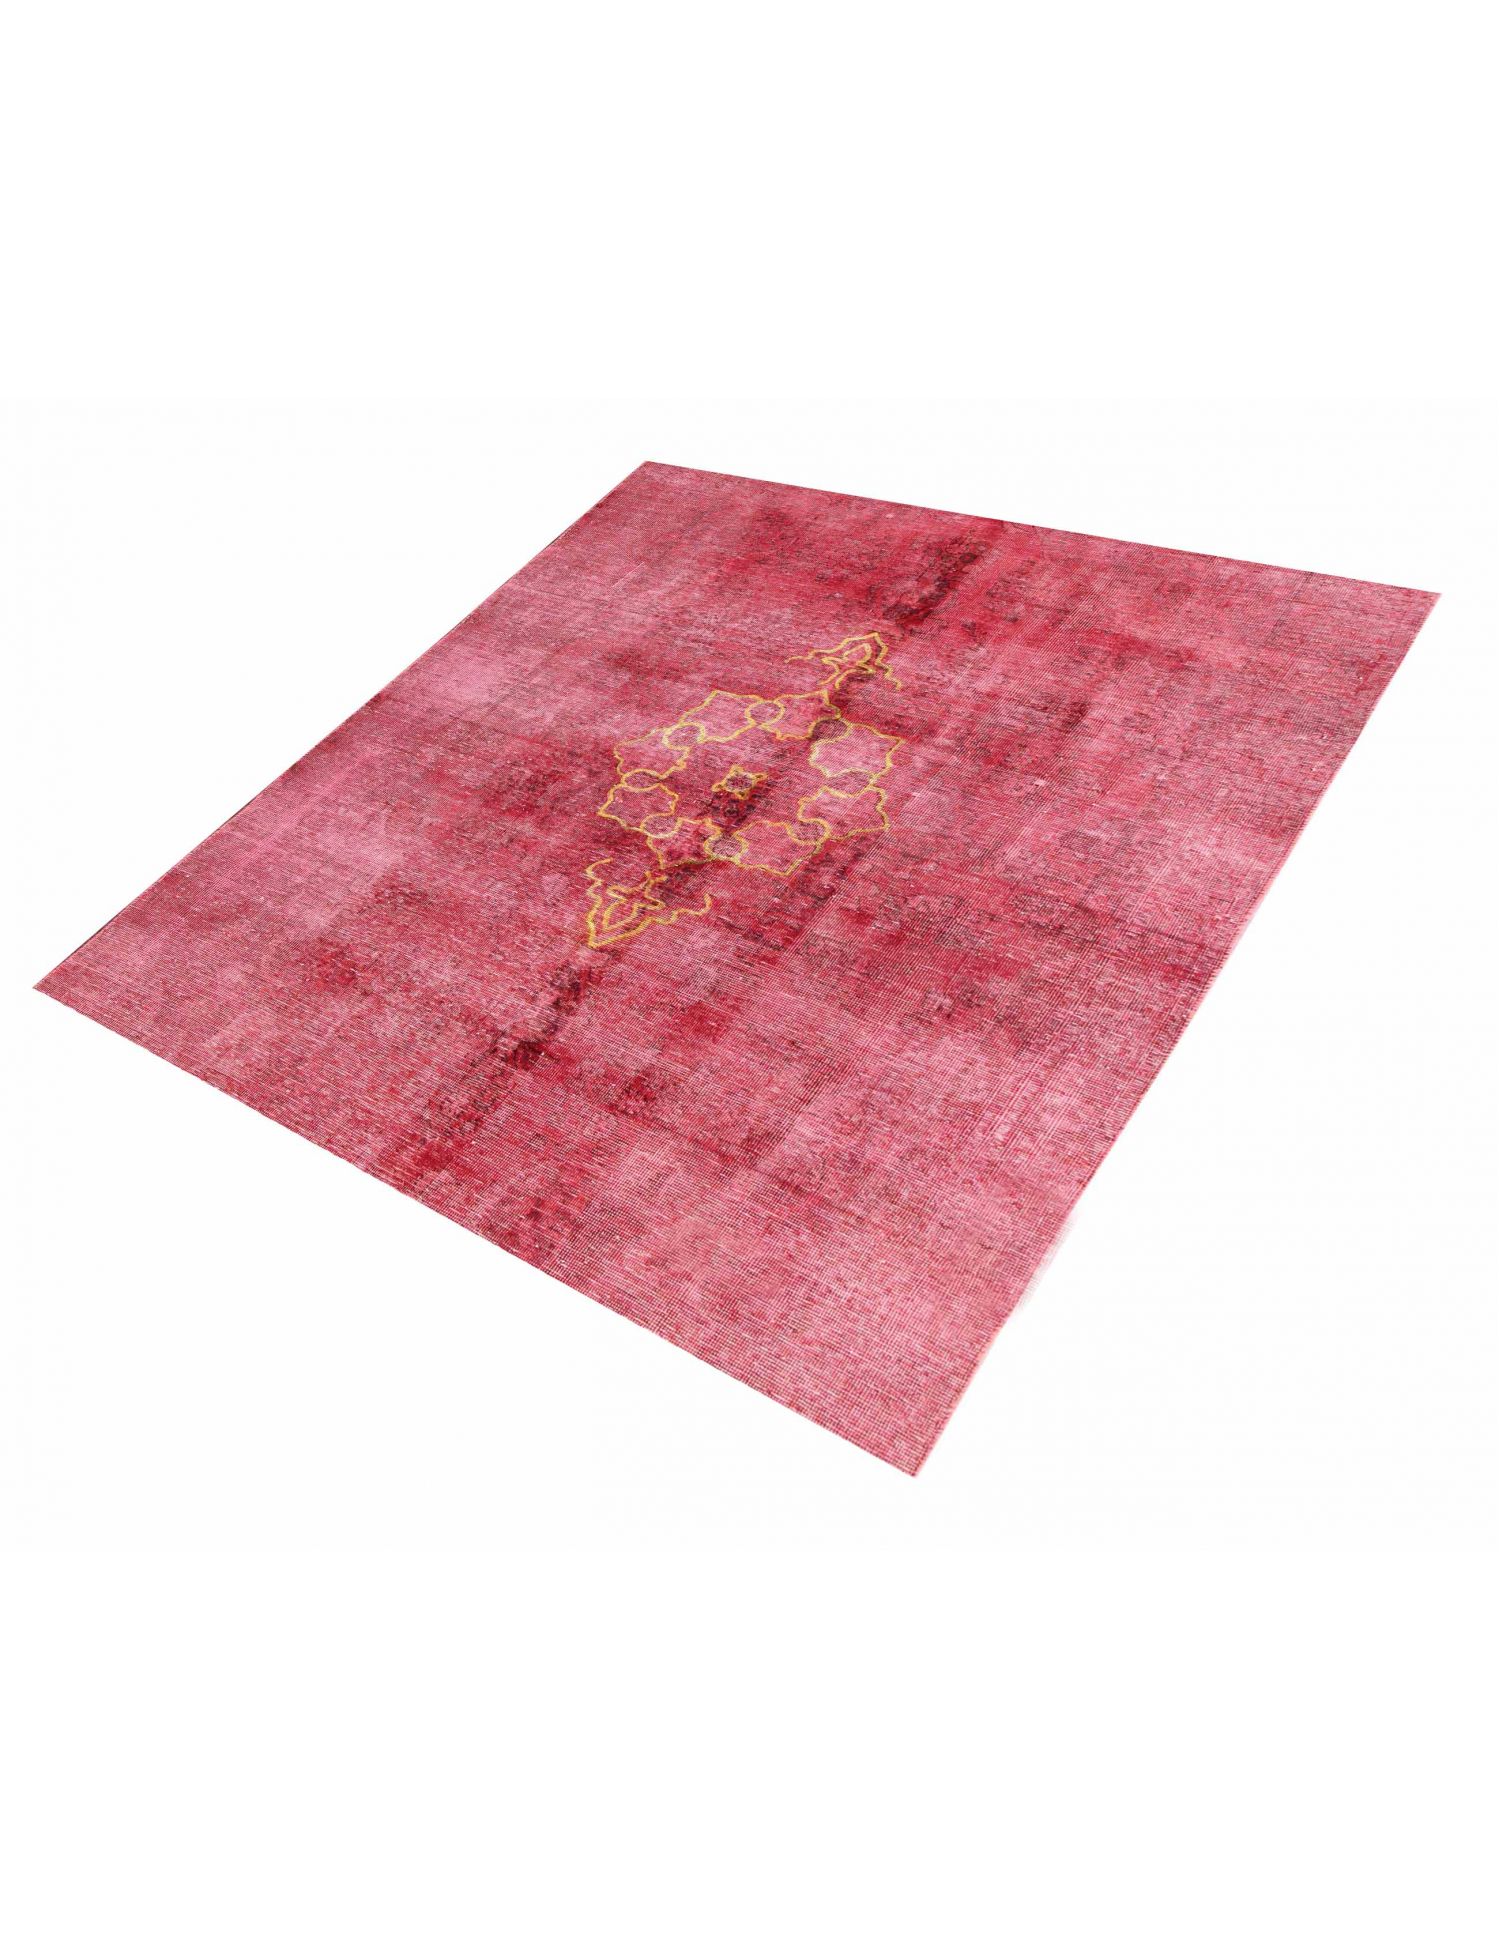 Persischer Vintage Teppich  rot <br/>188 x 188 cm